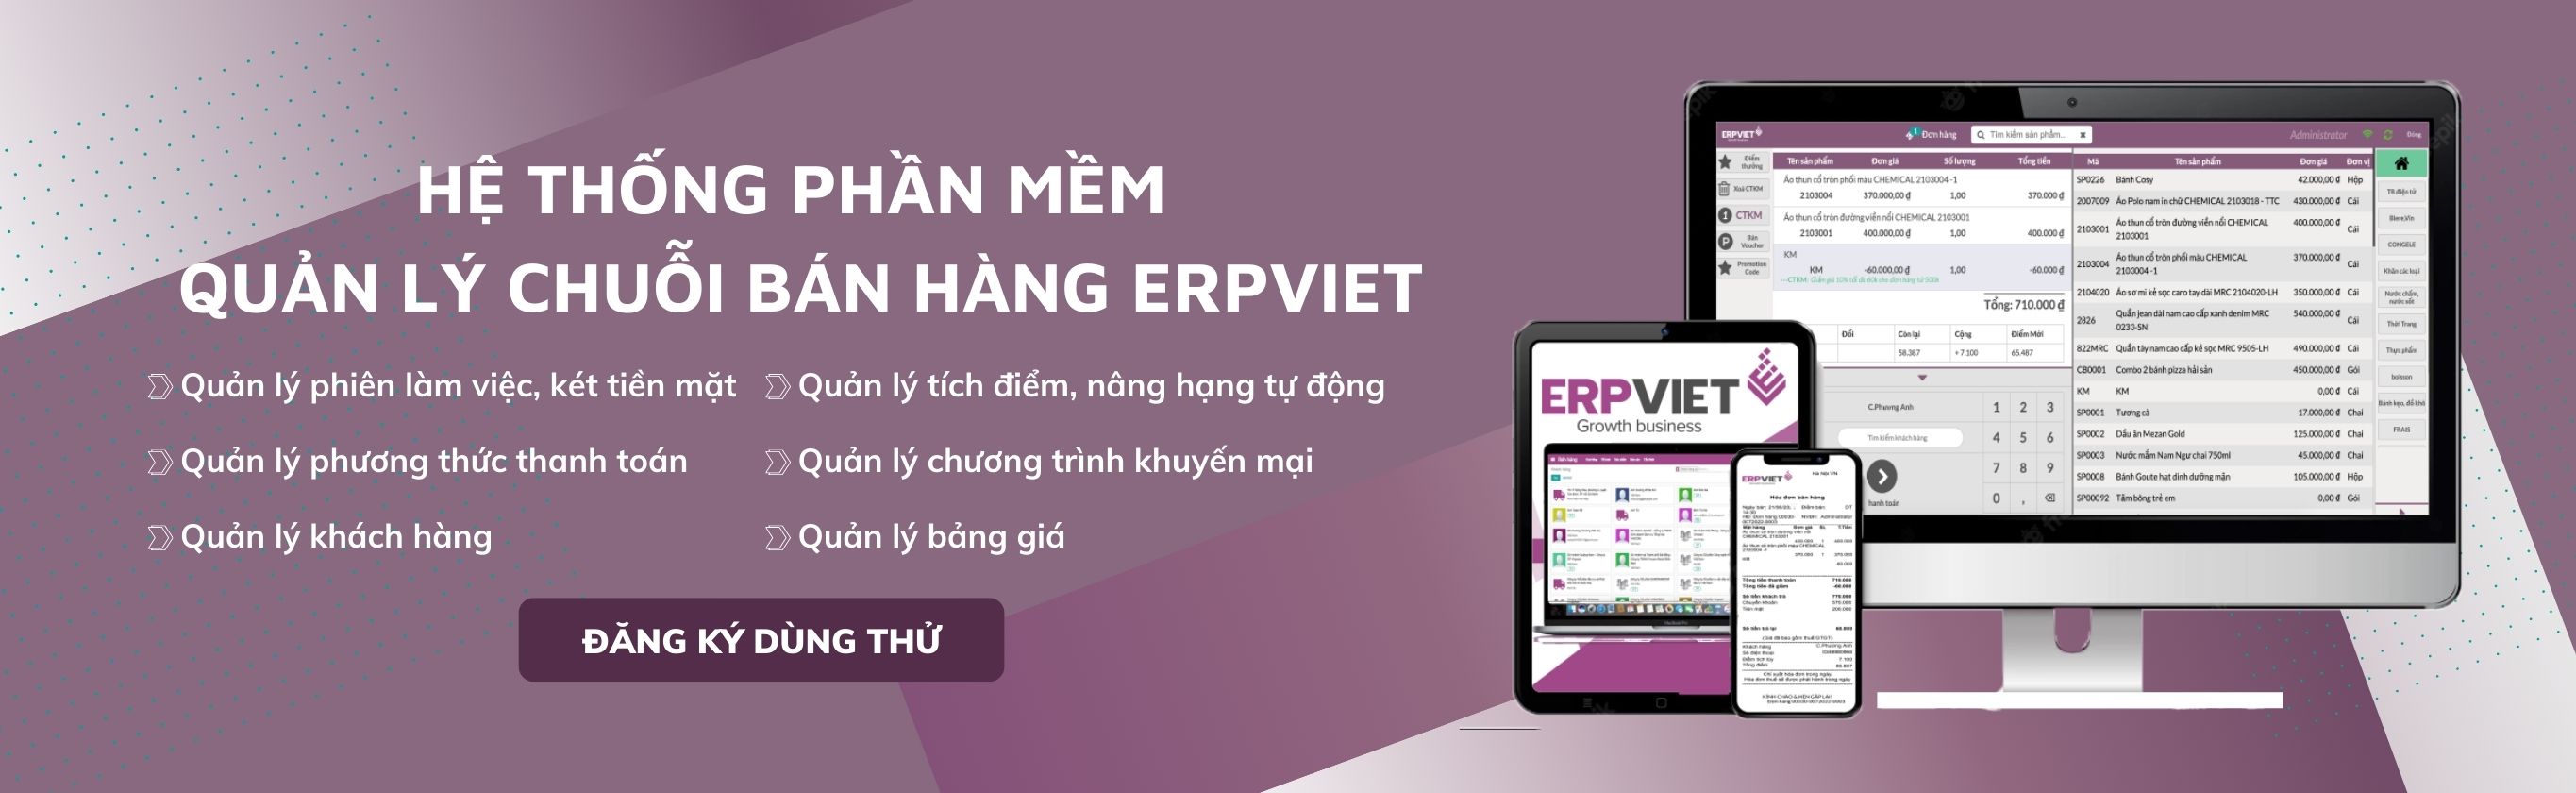 Banner giải pháp chuỗi bán lẻ ERPViet